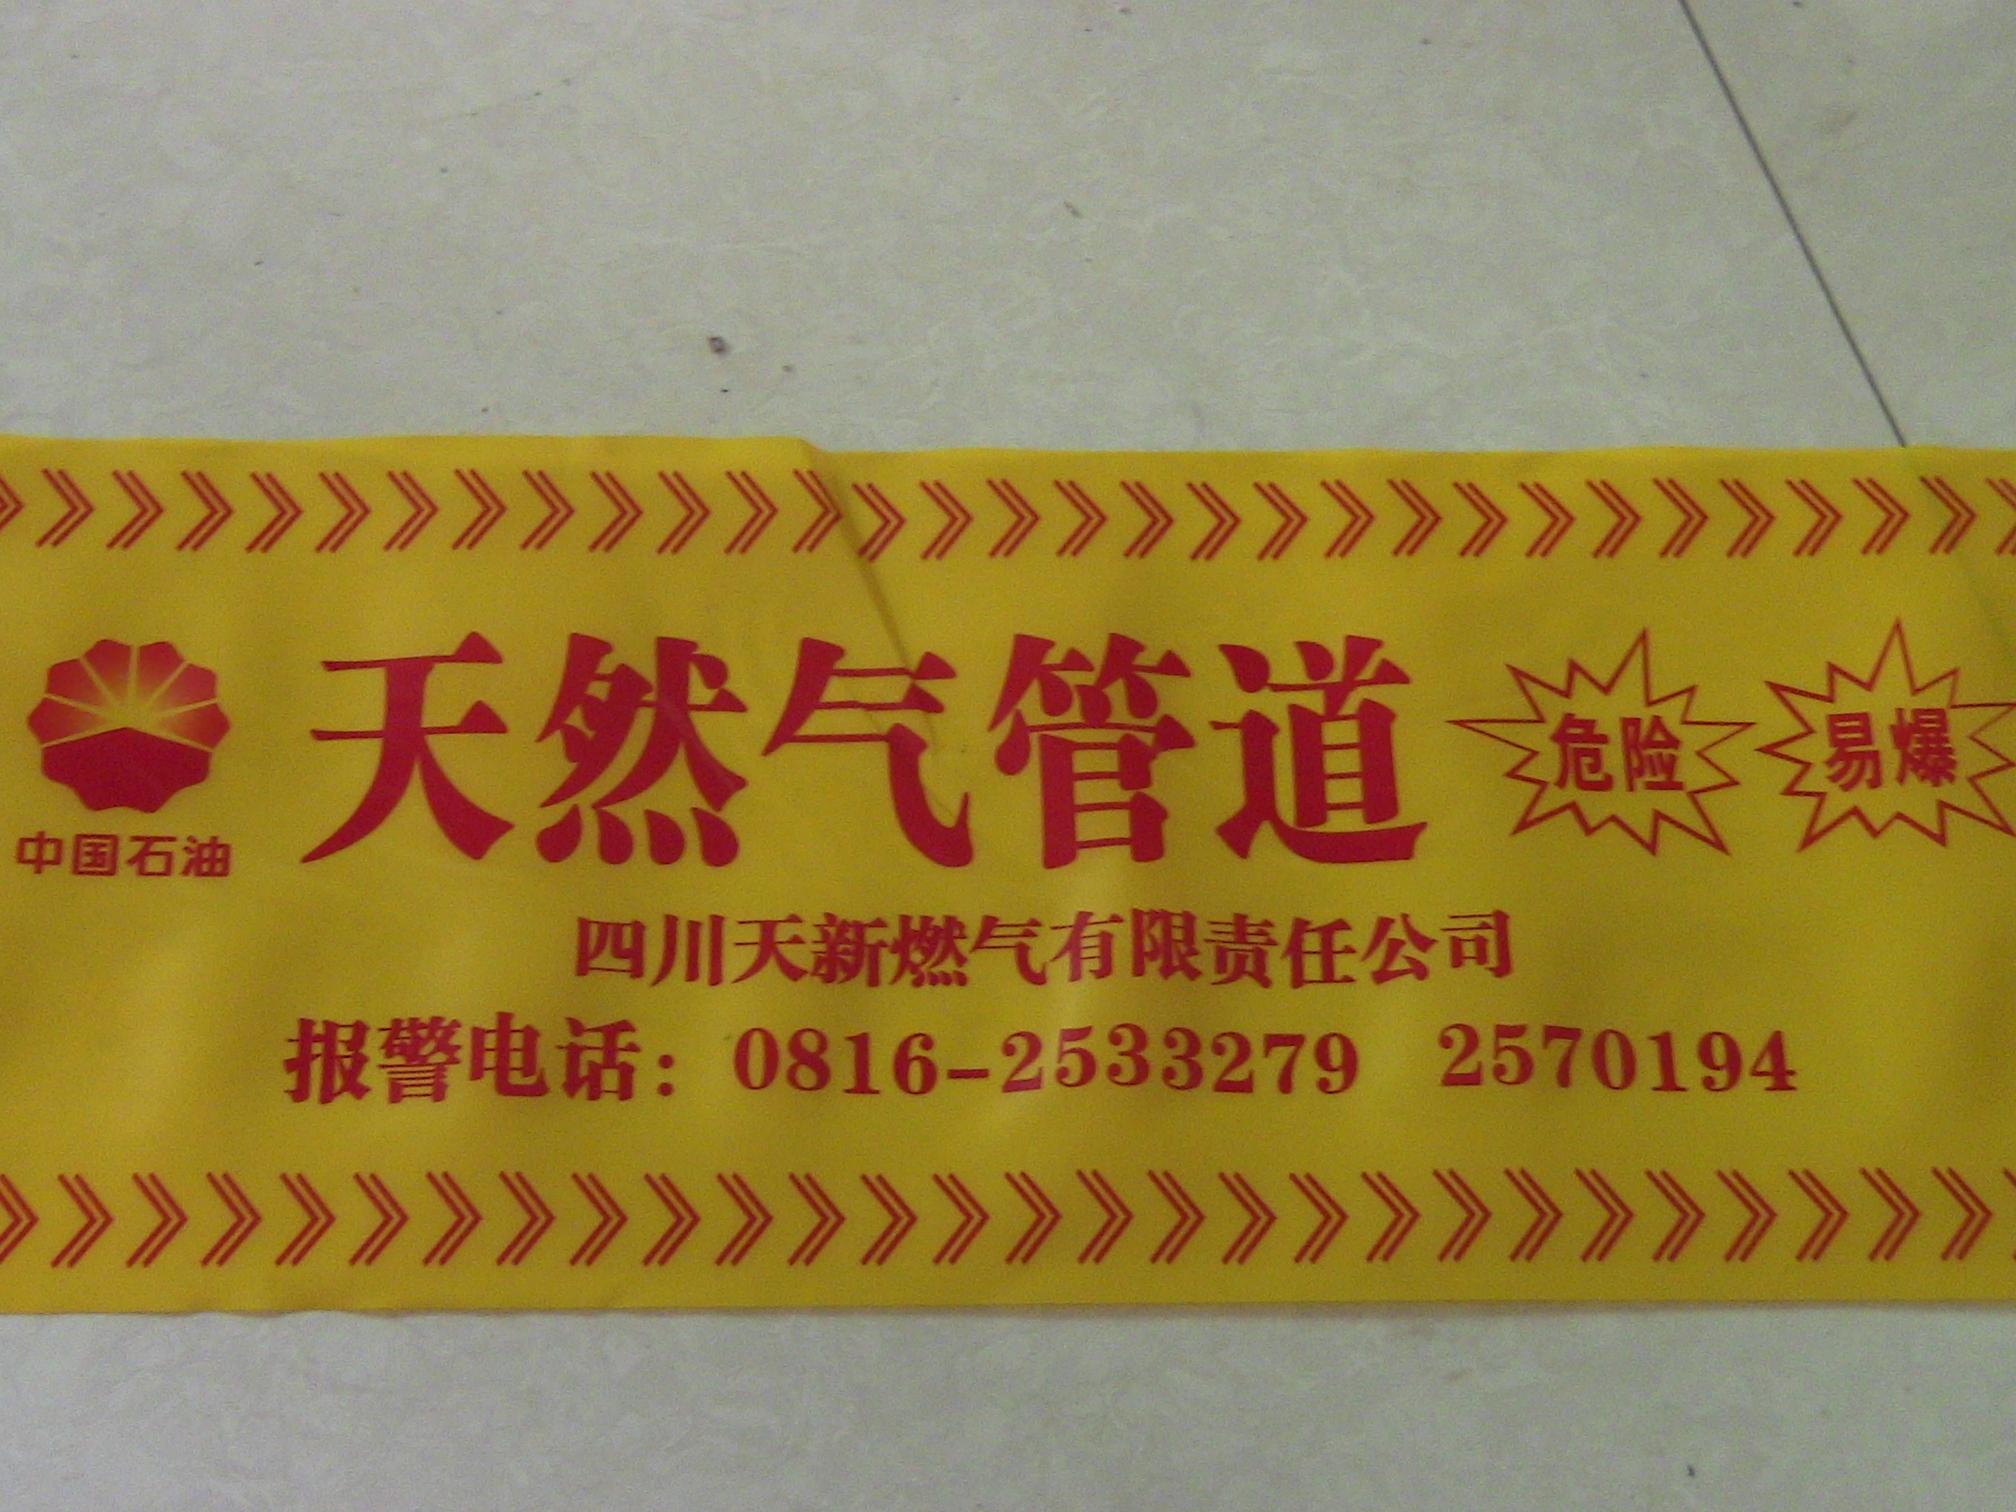 突发性事件的现场警戒，常备安全警示带，有备无患！广州深圳供货